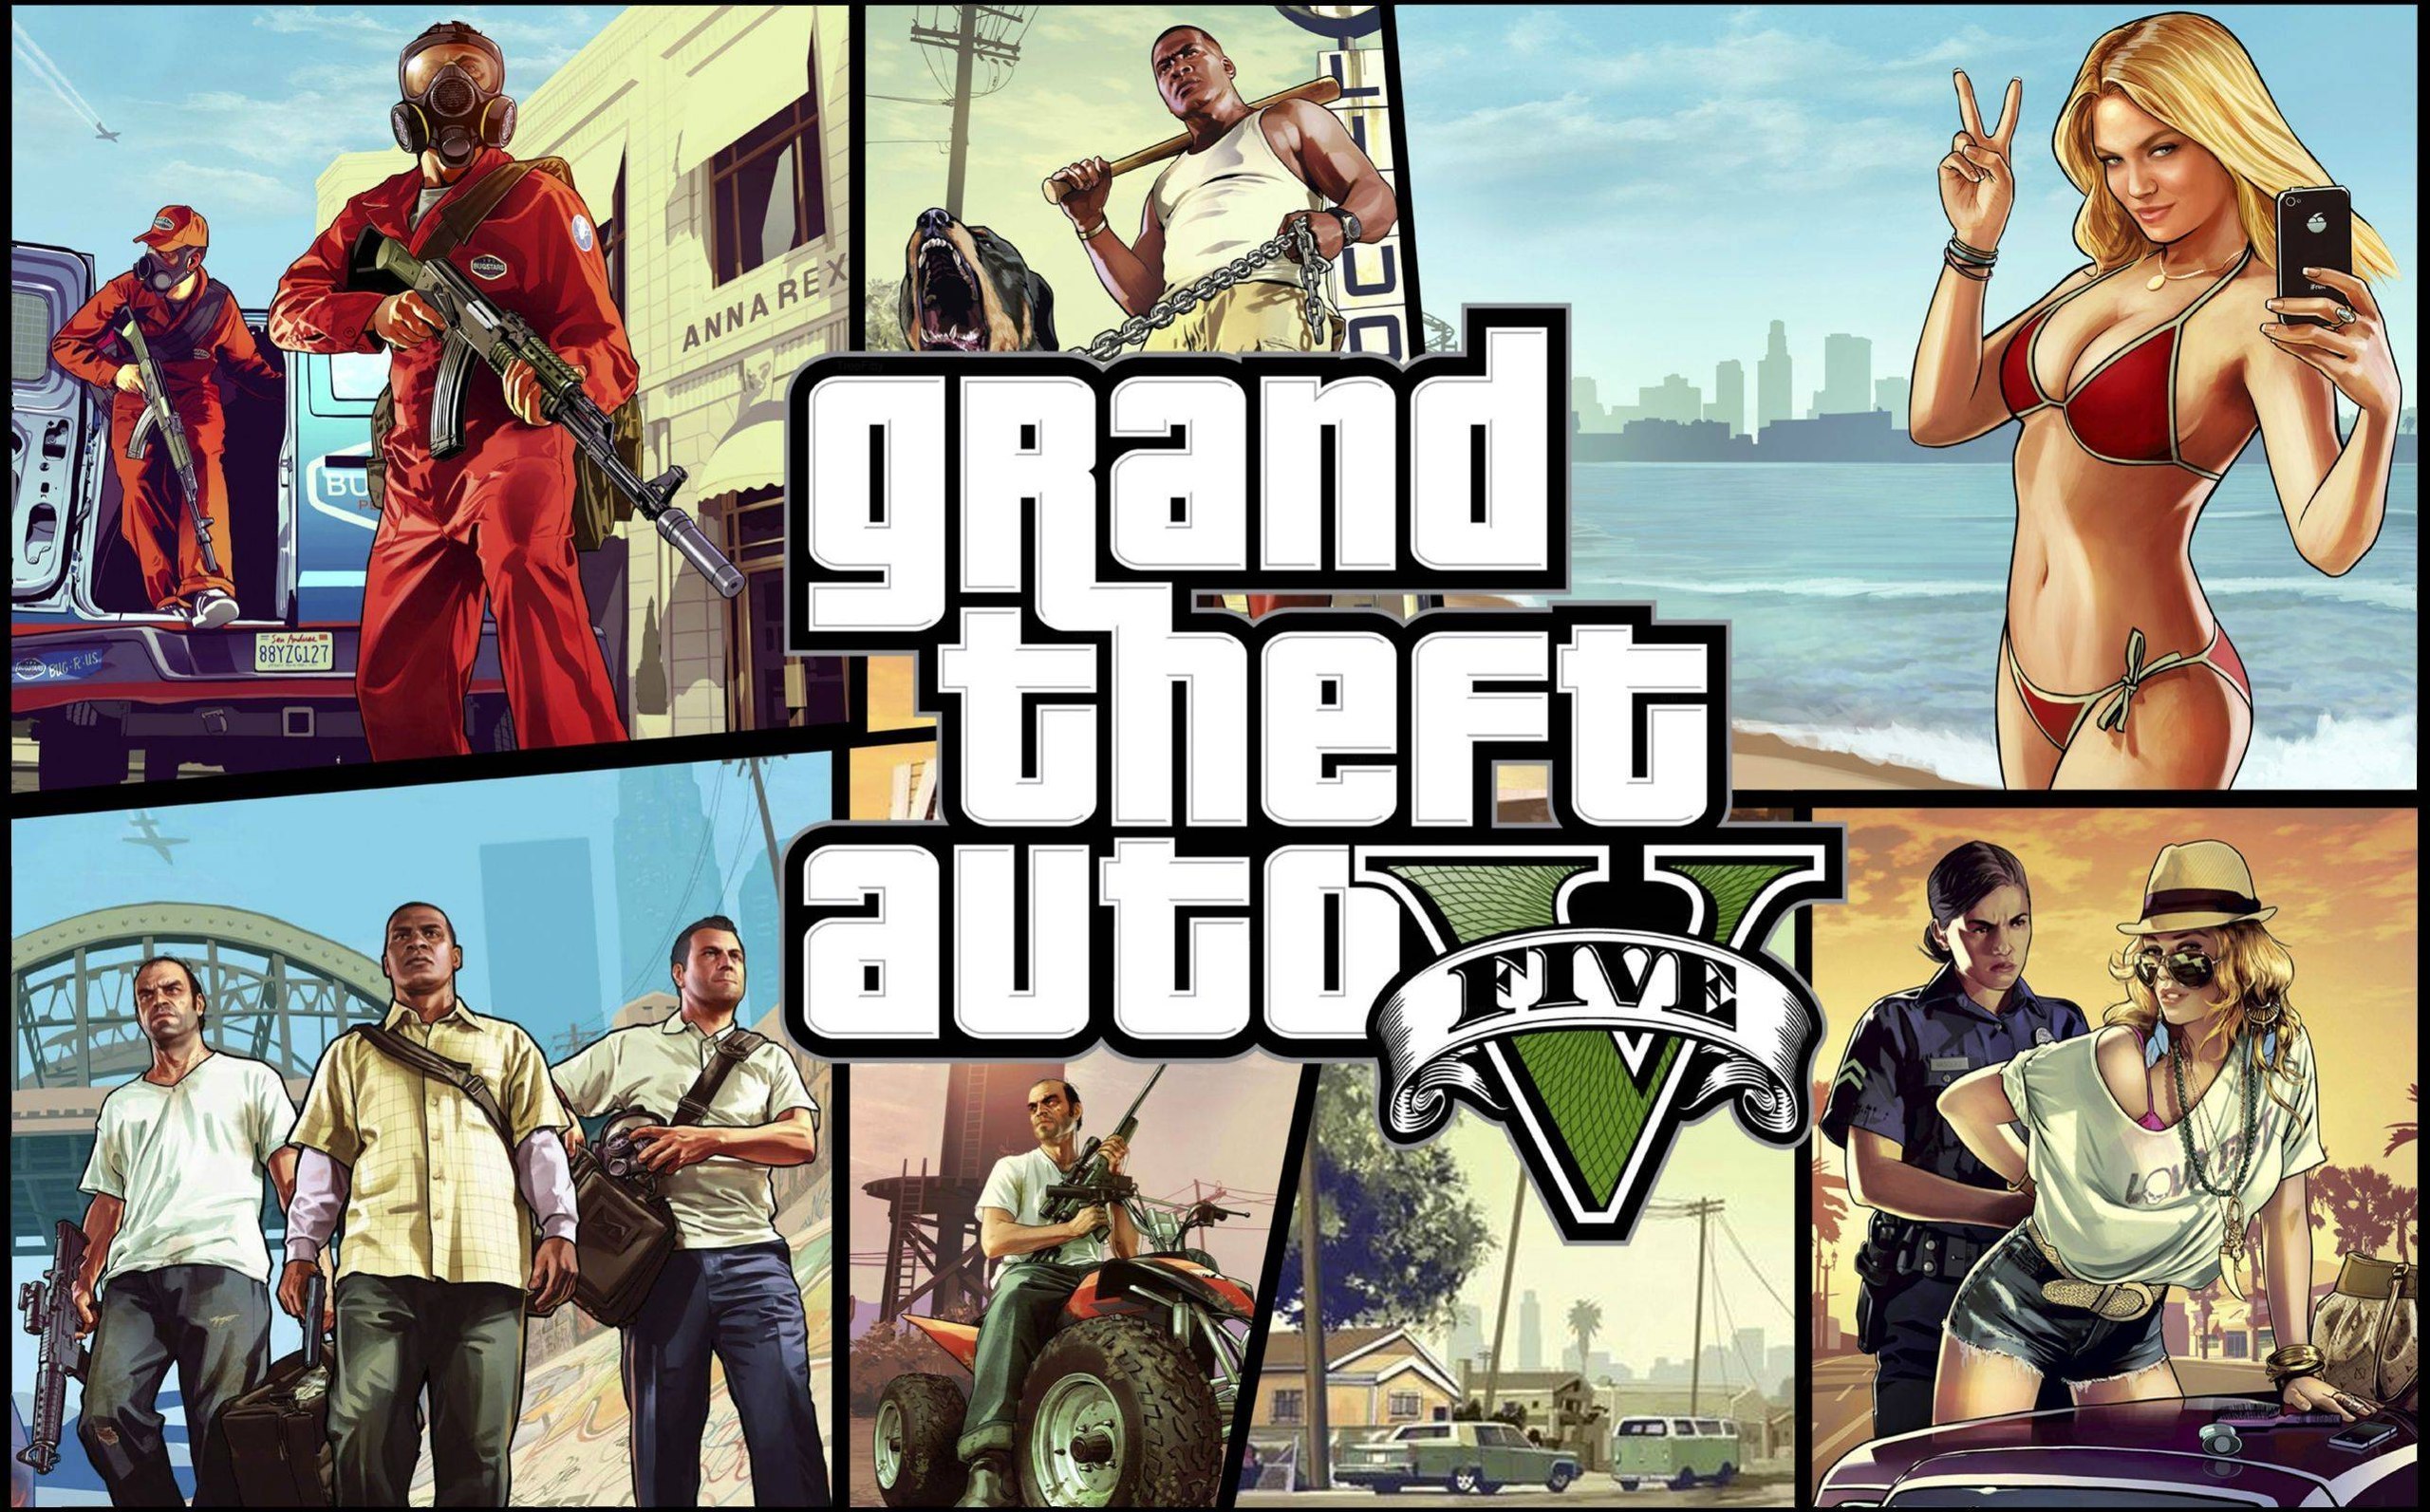 Grand Theft Auto 5: Dicas e Guias : Lista de Códigos para Xbox 360